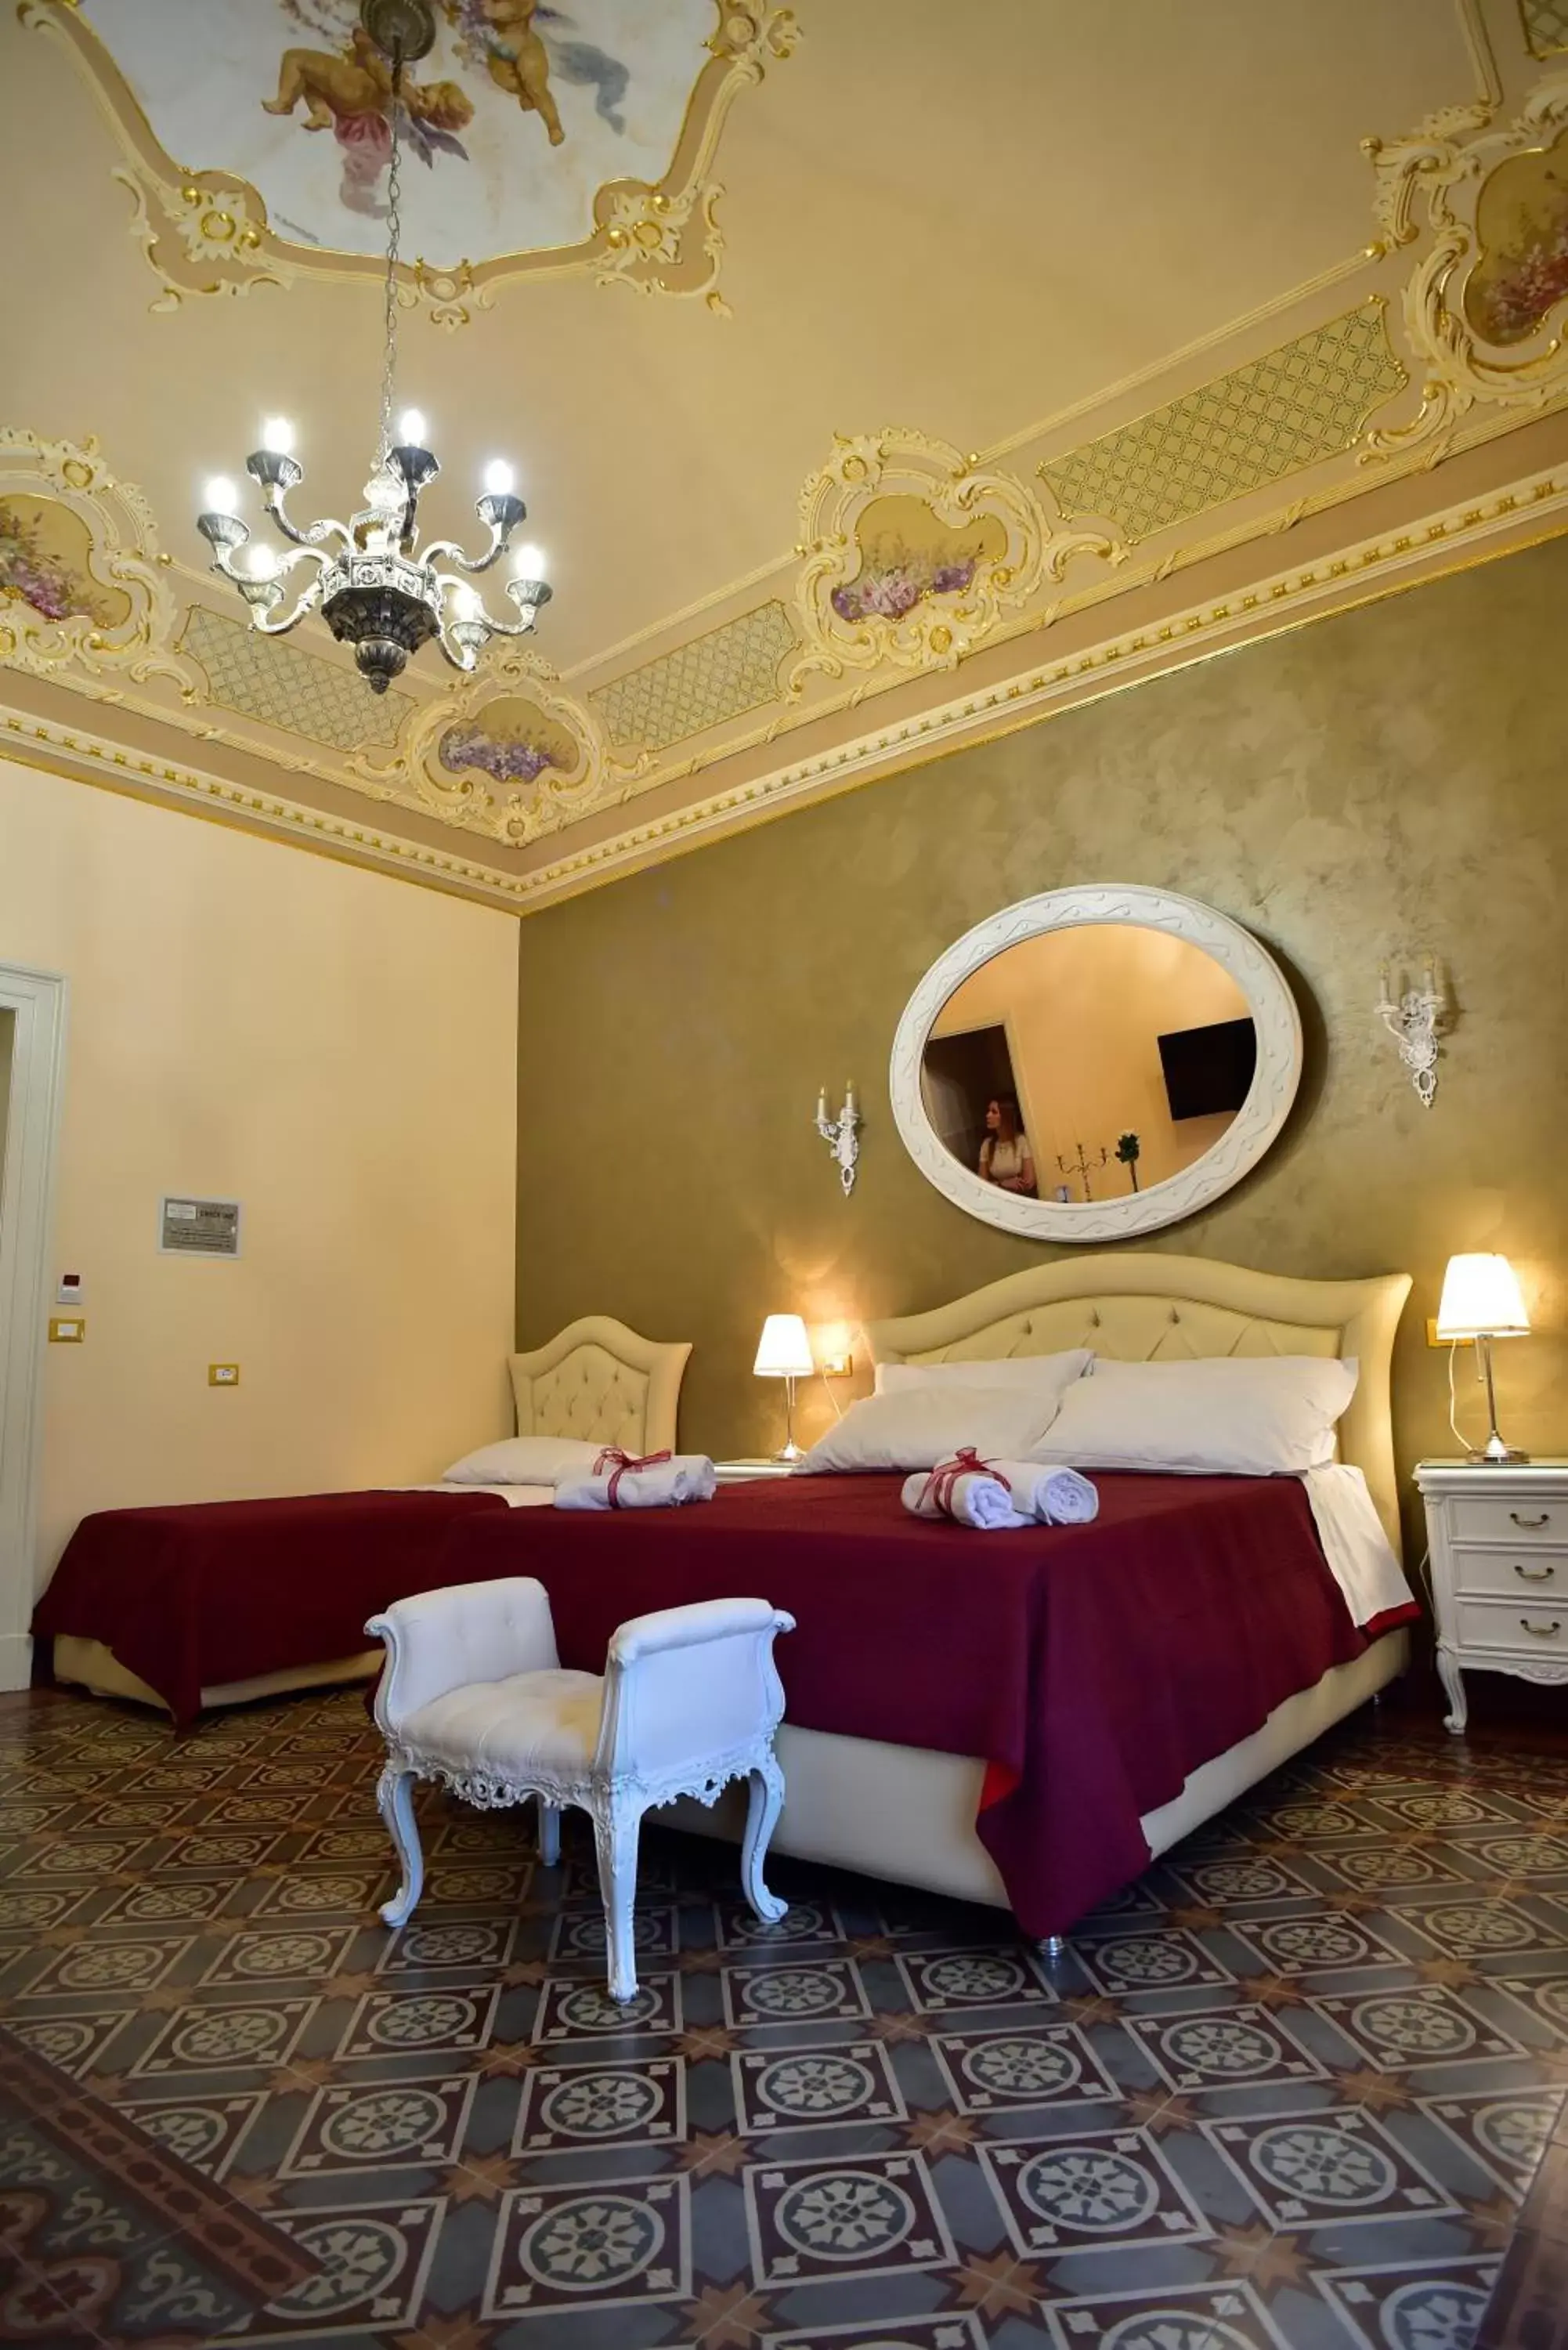 Photo of the whole room in Palazzo degli Affreschi